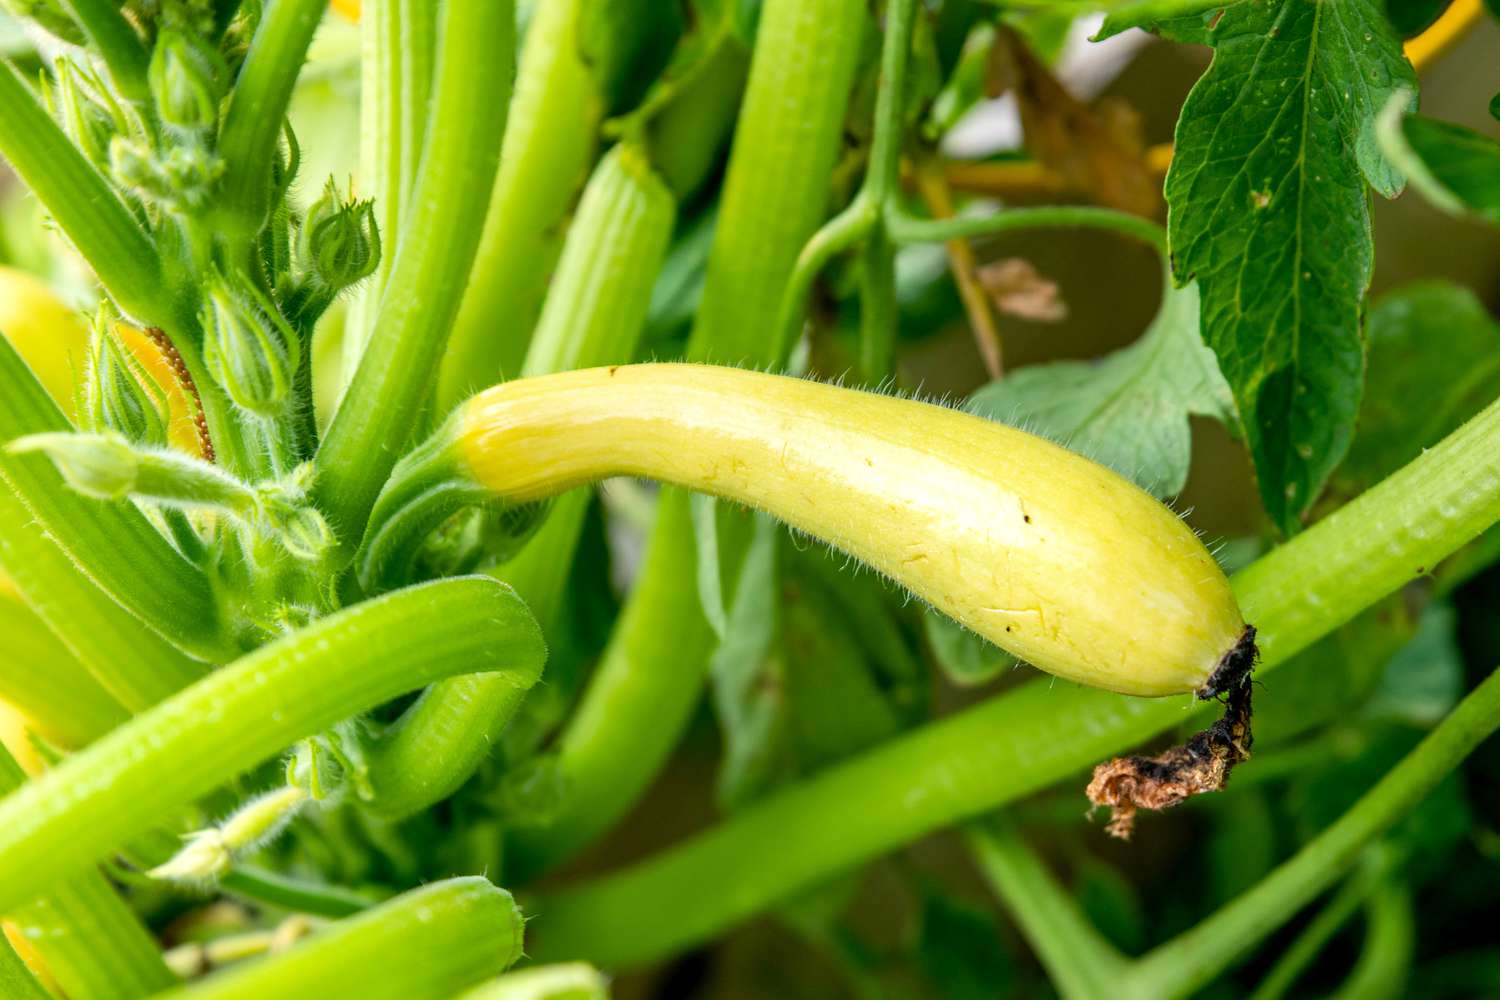 Crookneck-Kürbis mit langem, gebogenem, gelbem Gemüse, das an dicken Stielen in der Nähe der Knospen hängt